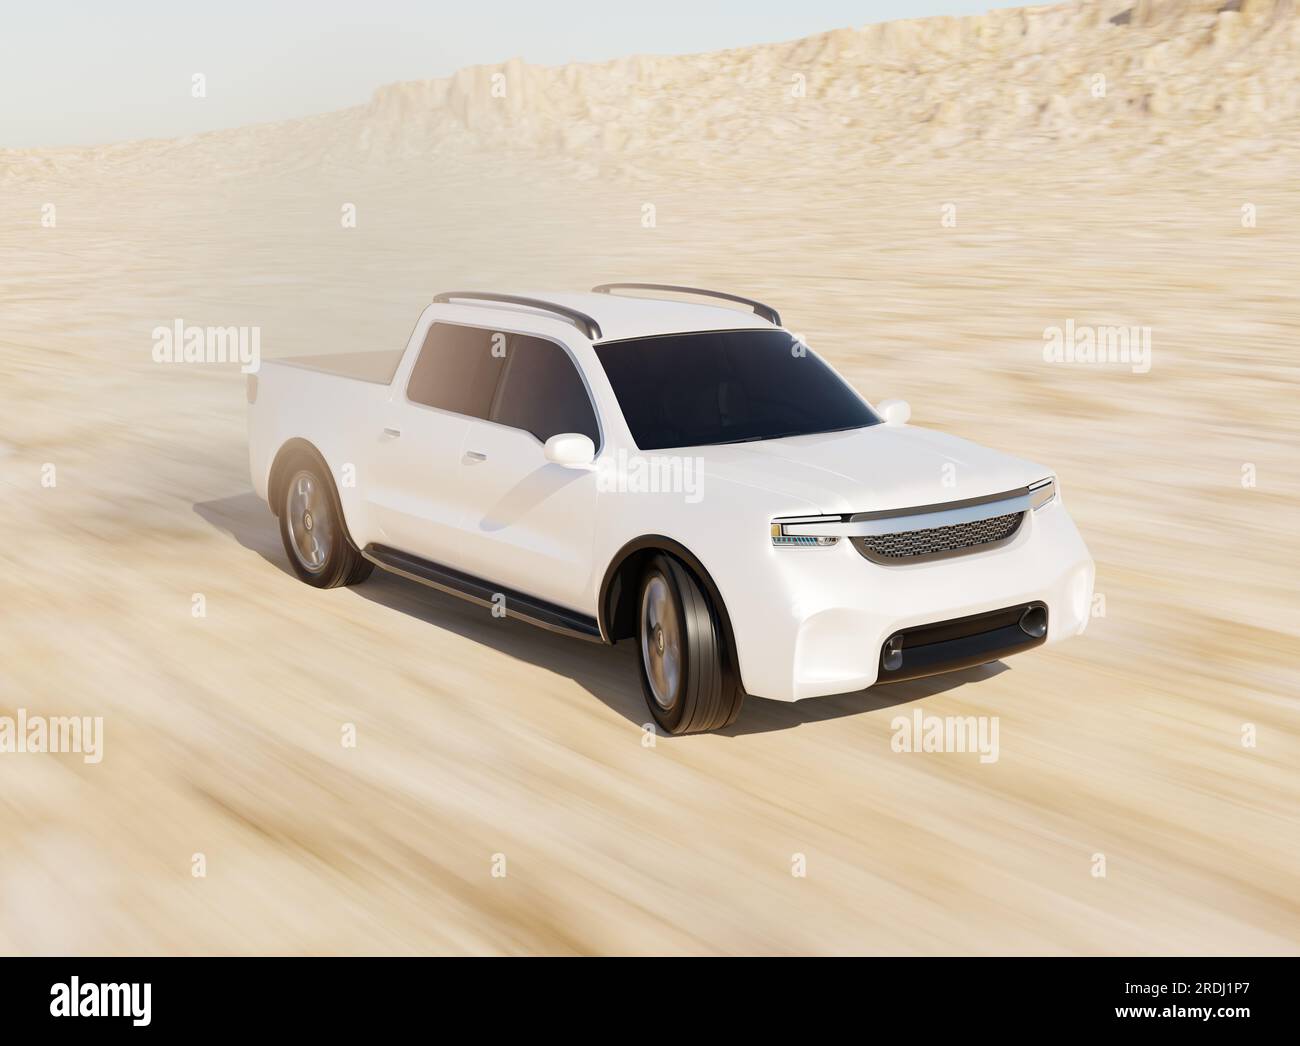 Camionnette électrique blanche conduisant dans le désert. Conception générique. Image de rendu 3D. Banque D'Images